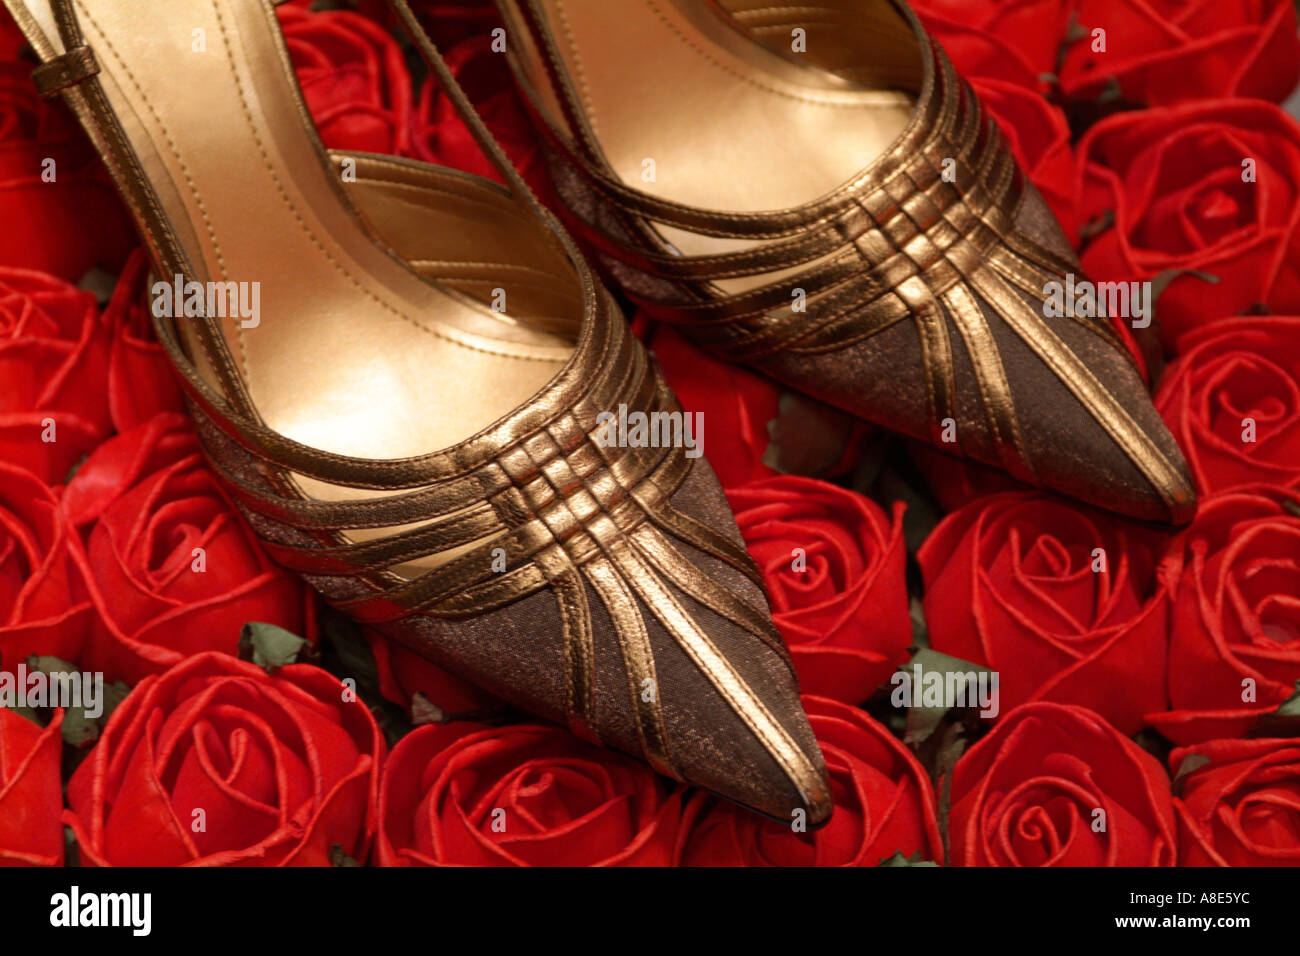 bronze high heel shoes